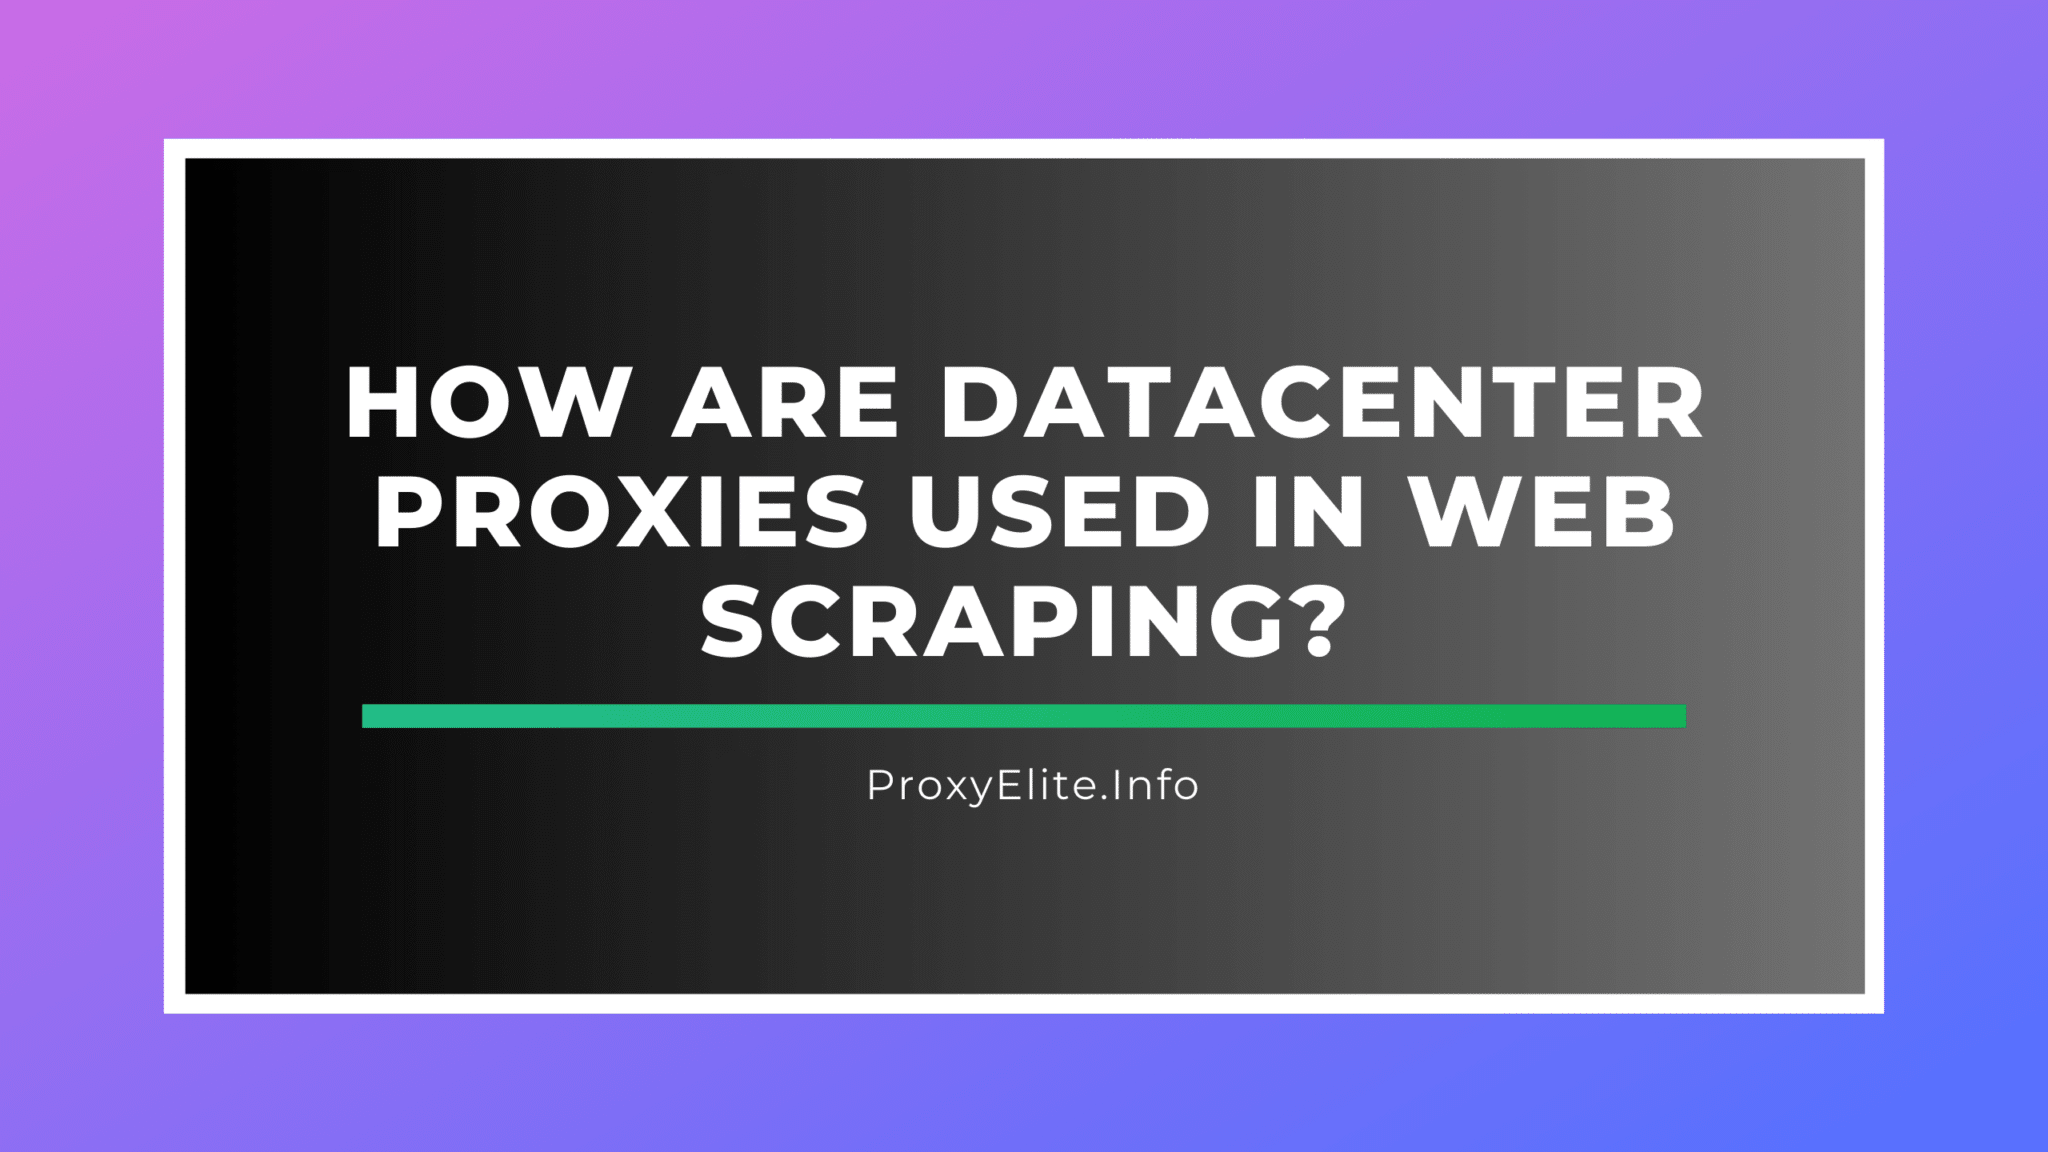 ¿Cómo se utilizan los servidores proxy del centro de datos en el web scraping?